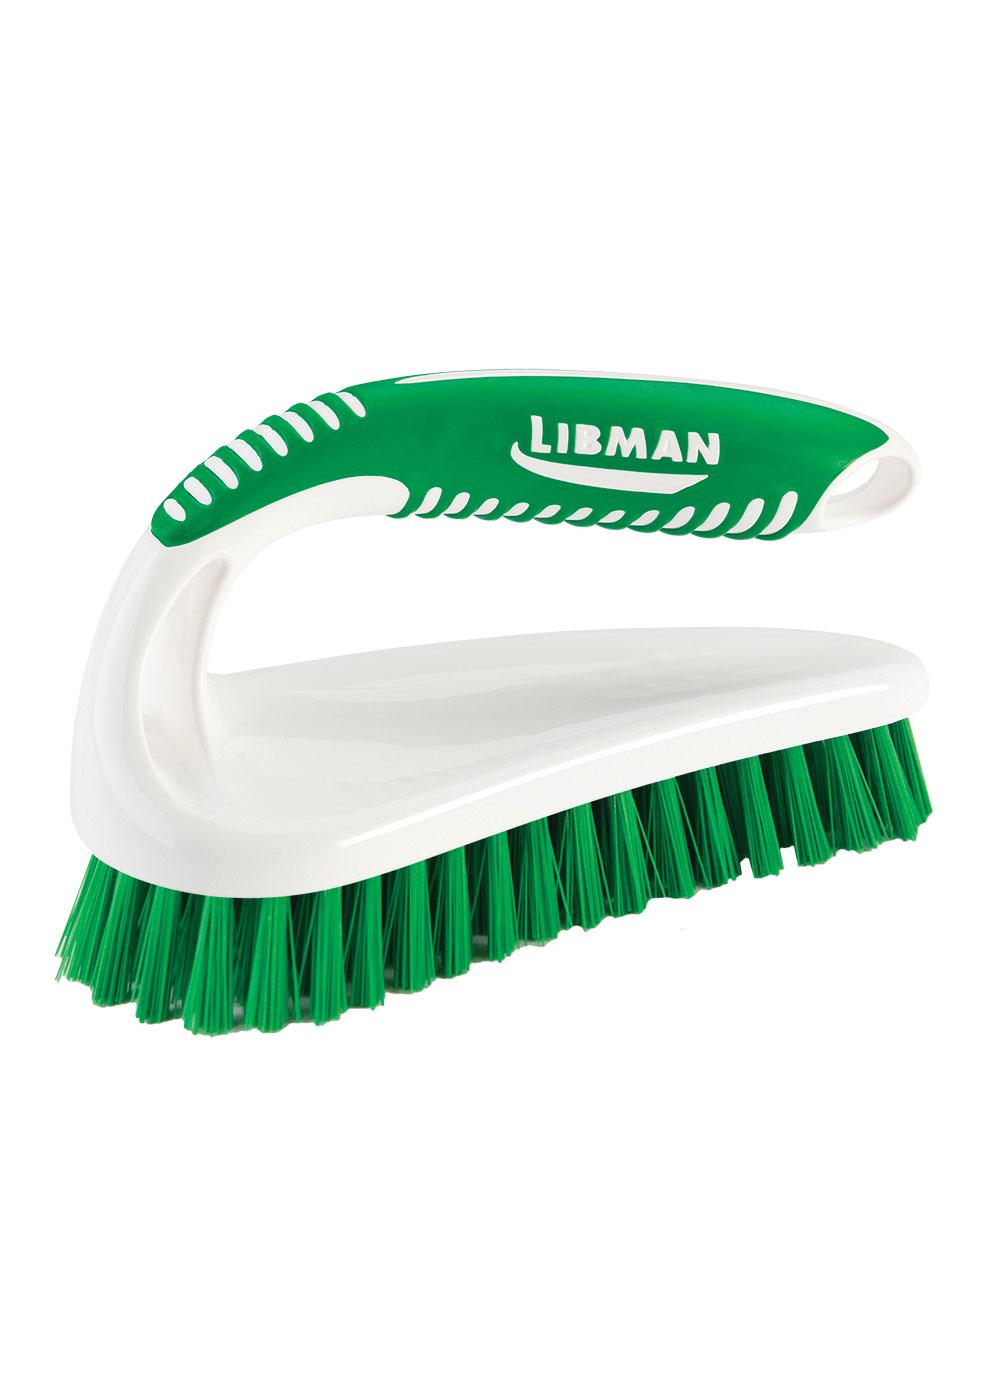 Libman Scrub Brush, Heavy Duty